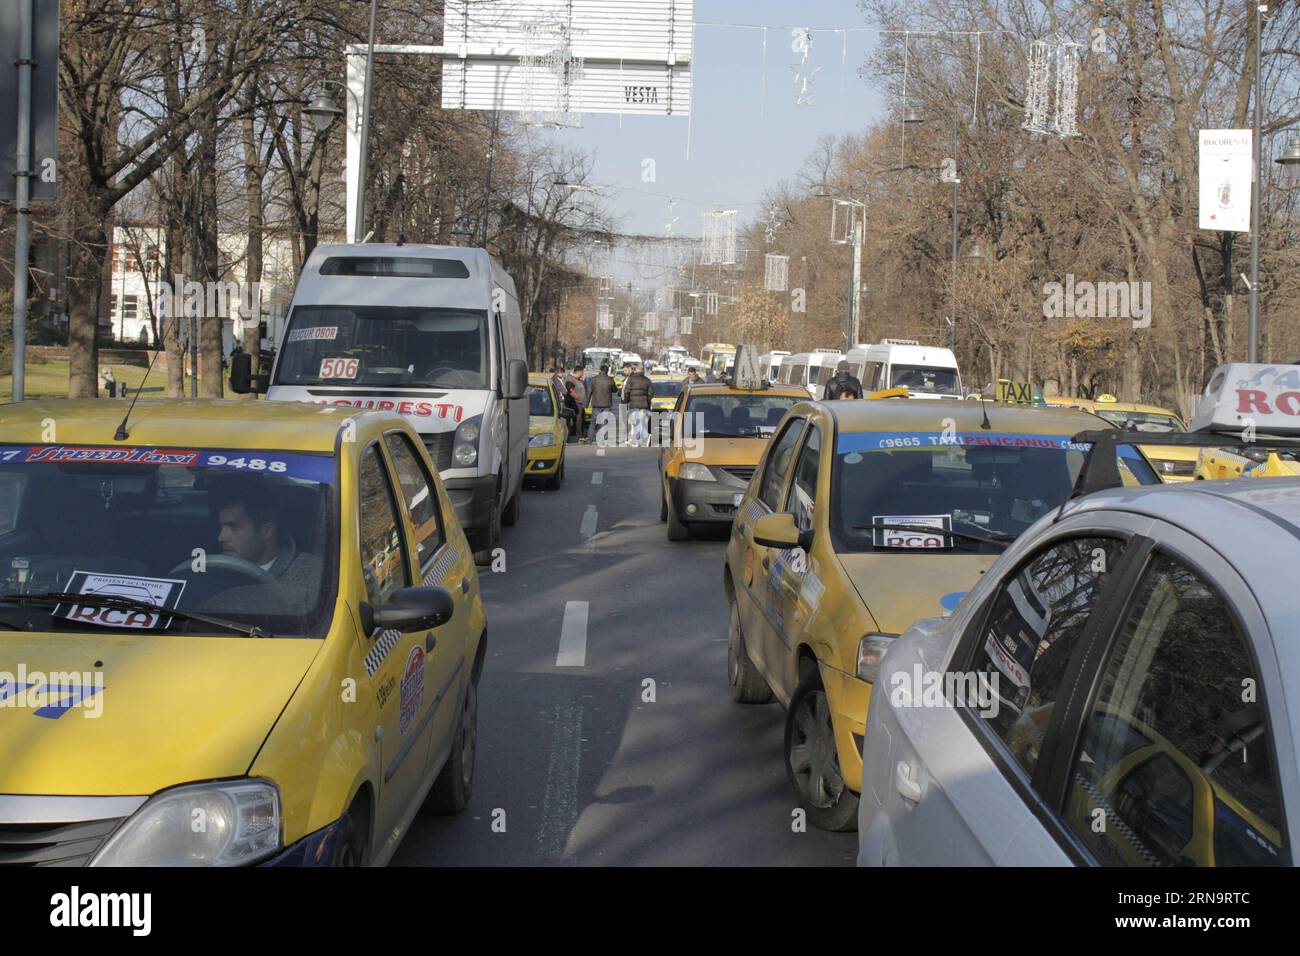 BUKAREST, 17. Dezember 2015 -- Fahrzeuge werden vor dem Regierungsgebäude während eines Protestes in Bukarest, Rumänien, am 17. Dezember 2015 gesehen. Mehr als 4.000 Menschen aus dem ganzen Land nahmen an dem Protest gegen den Anstieg der obligatorischen Kfz-Unfallpflichtversicherung Teil. ) RUMÄNIEN-BUKAREST-PROTEST GabrielxPetrescu PUBLICATIONxNOTxINxCHN Bukarest DEZ 17 2015 FAHRZEUGE sind Seen vor dem Regierungsgebäude während eines Protestes in Bukarest 2015 nahmen am Protest gegen die Überflutung des Zwangs mehr als 4 000 Prominente aus dem ganzen Land Teil Stockfoto